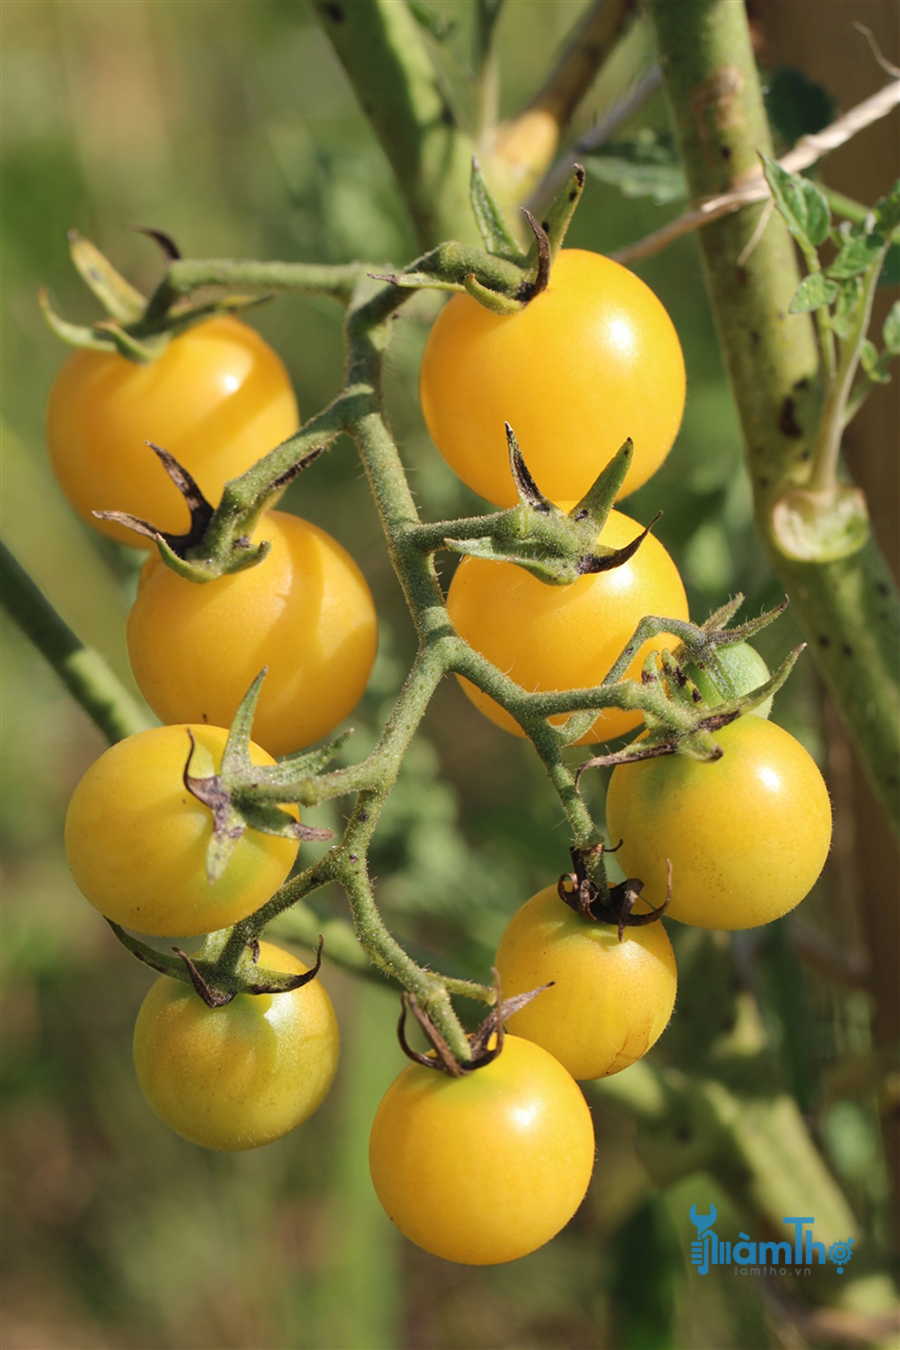 Hướng dẫn cách trồng cây cà chua bi vàng